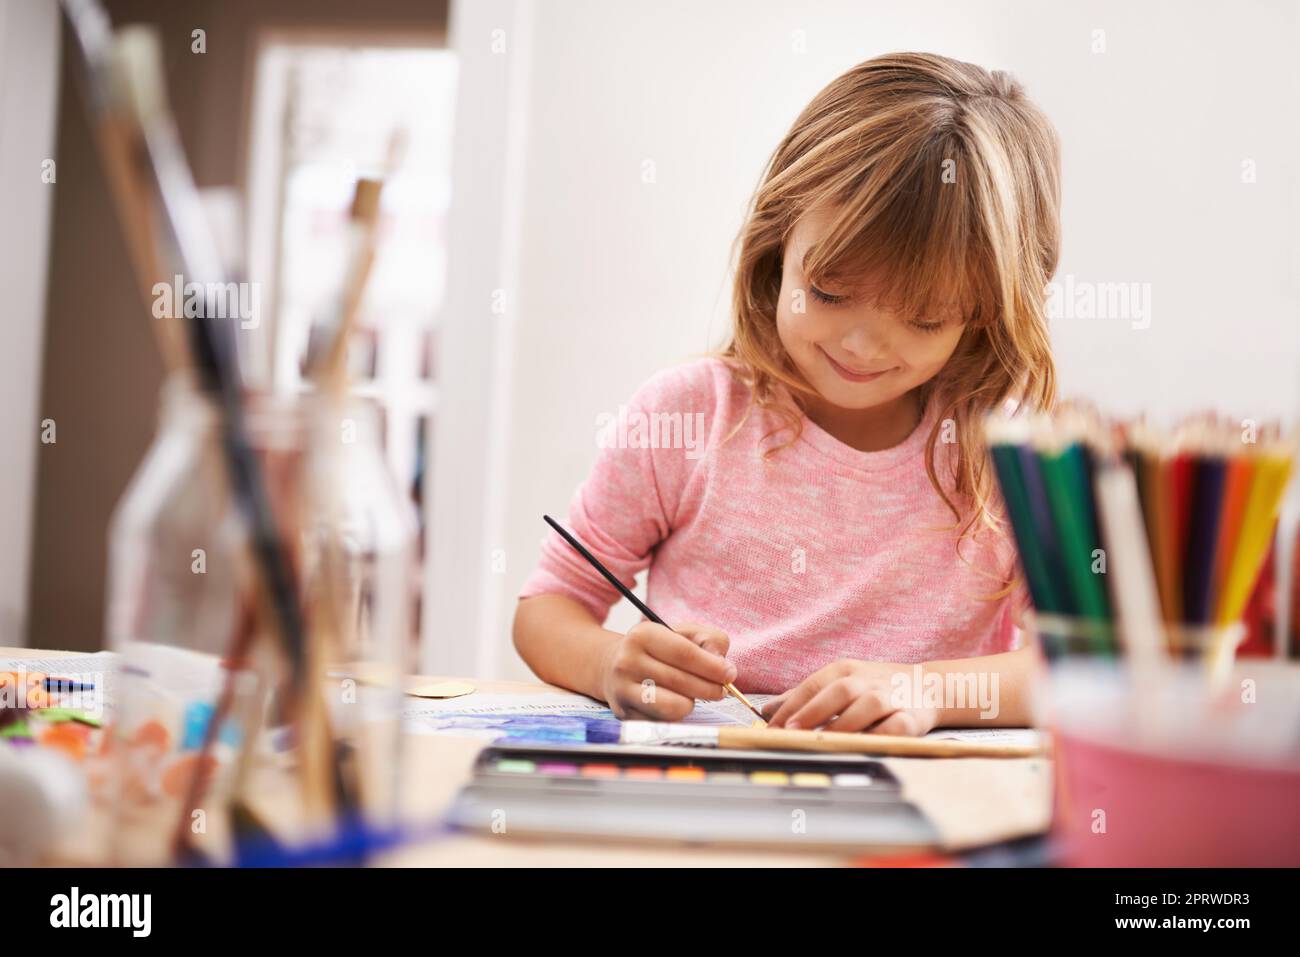 Sie liebt ihre Malerei. Ein kleines Mädchen, das ein Bild malt. Stockfoto